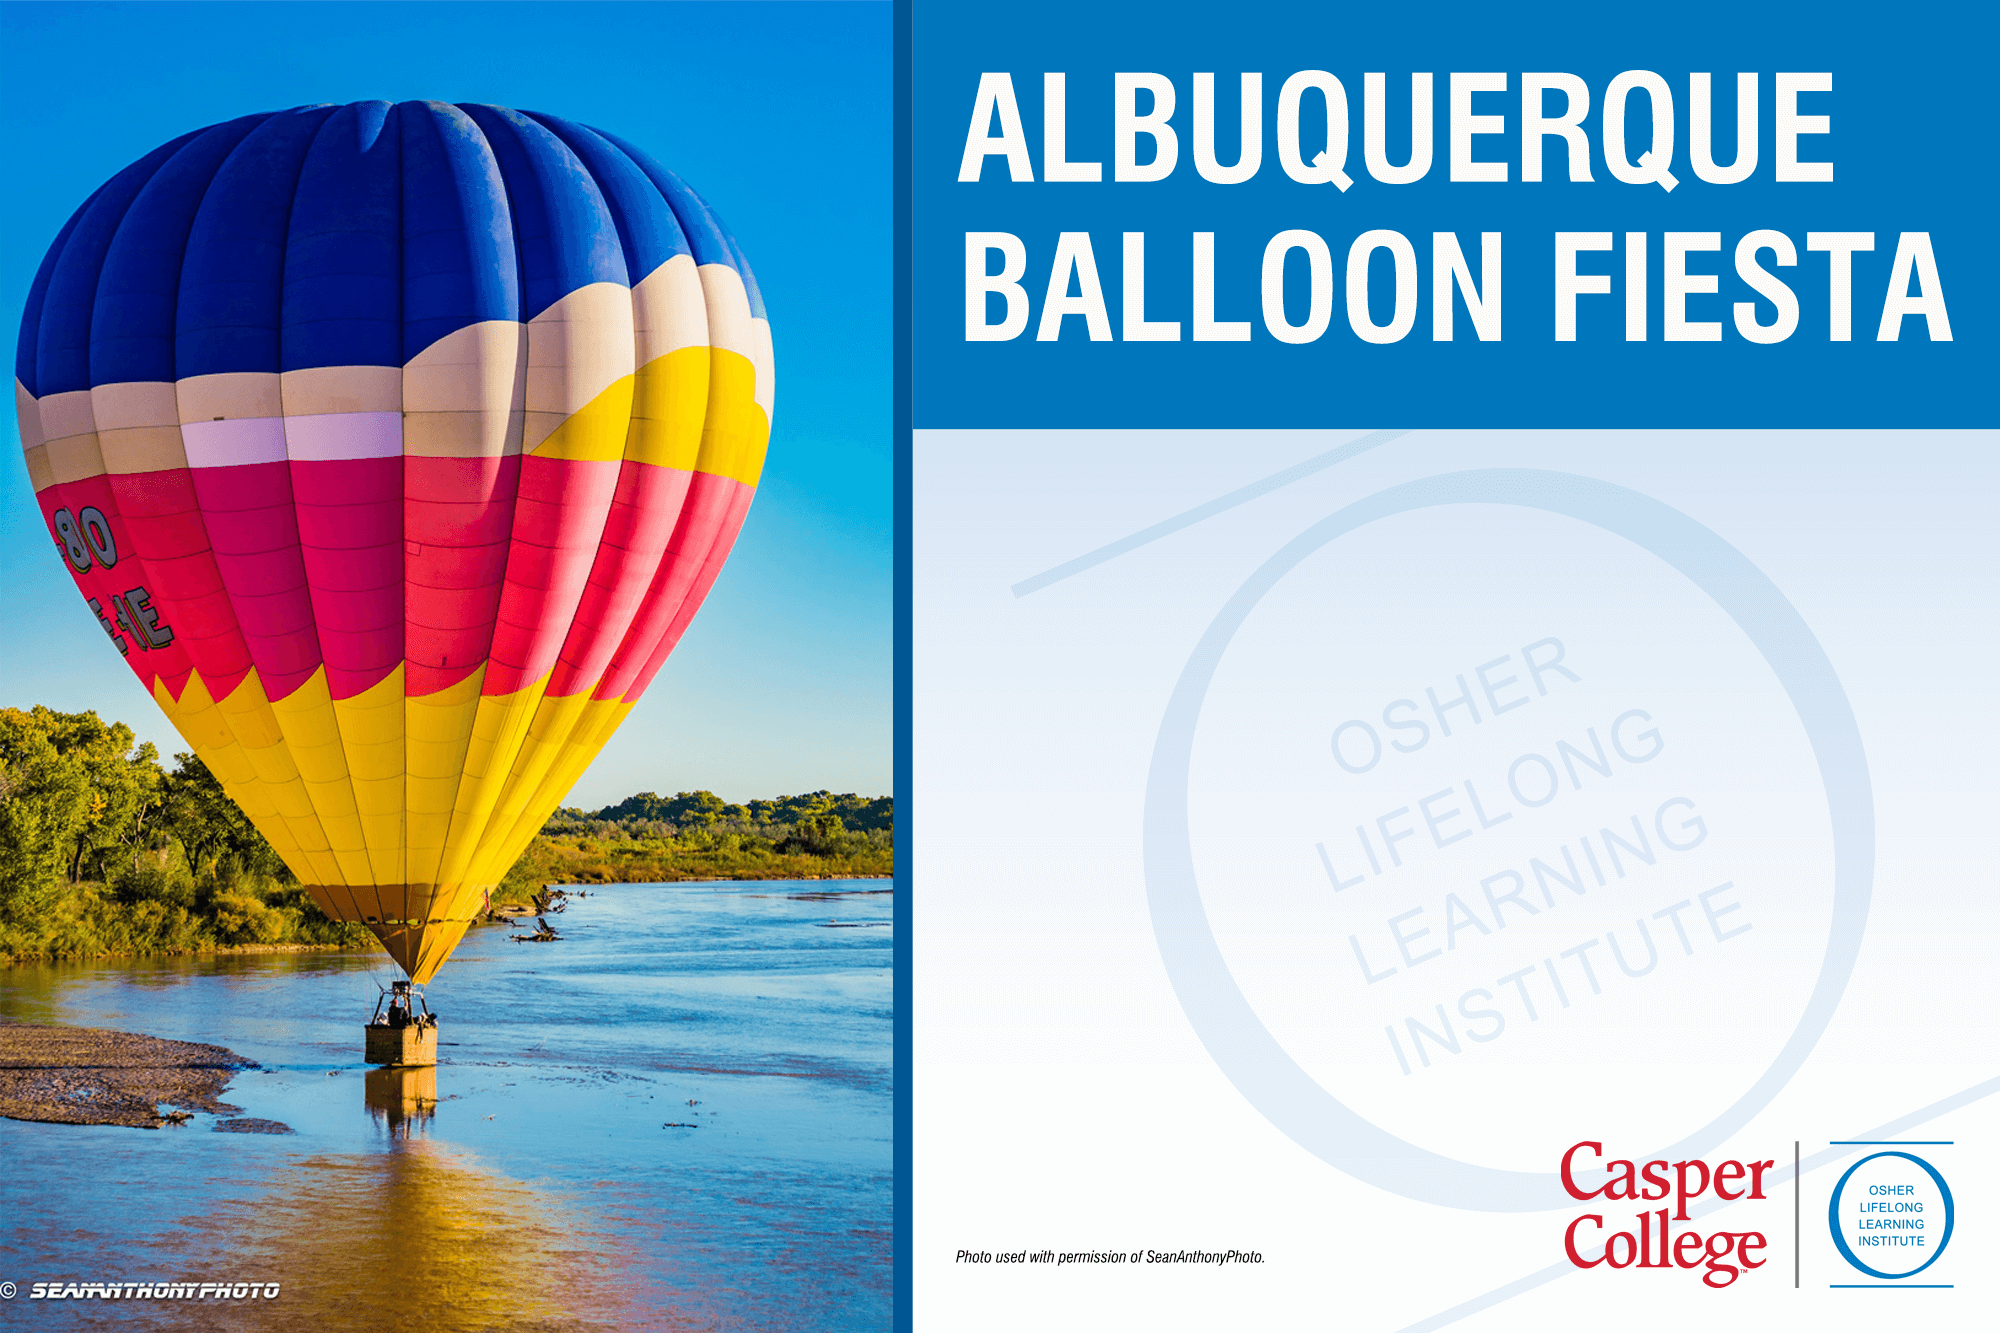 Photo of a hot air ballon with the words "Albuquerque Balloon Fiesta."